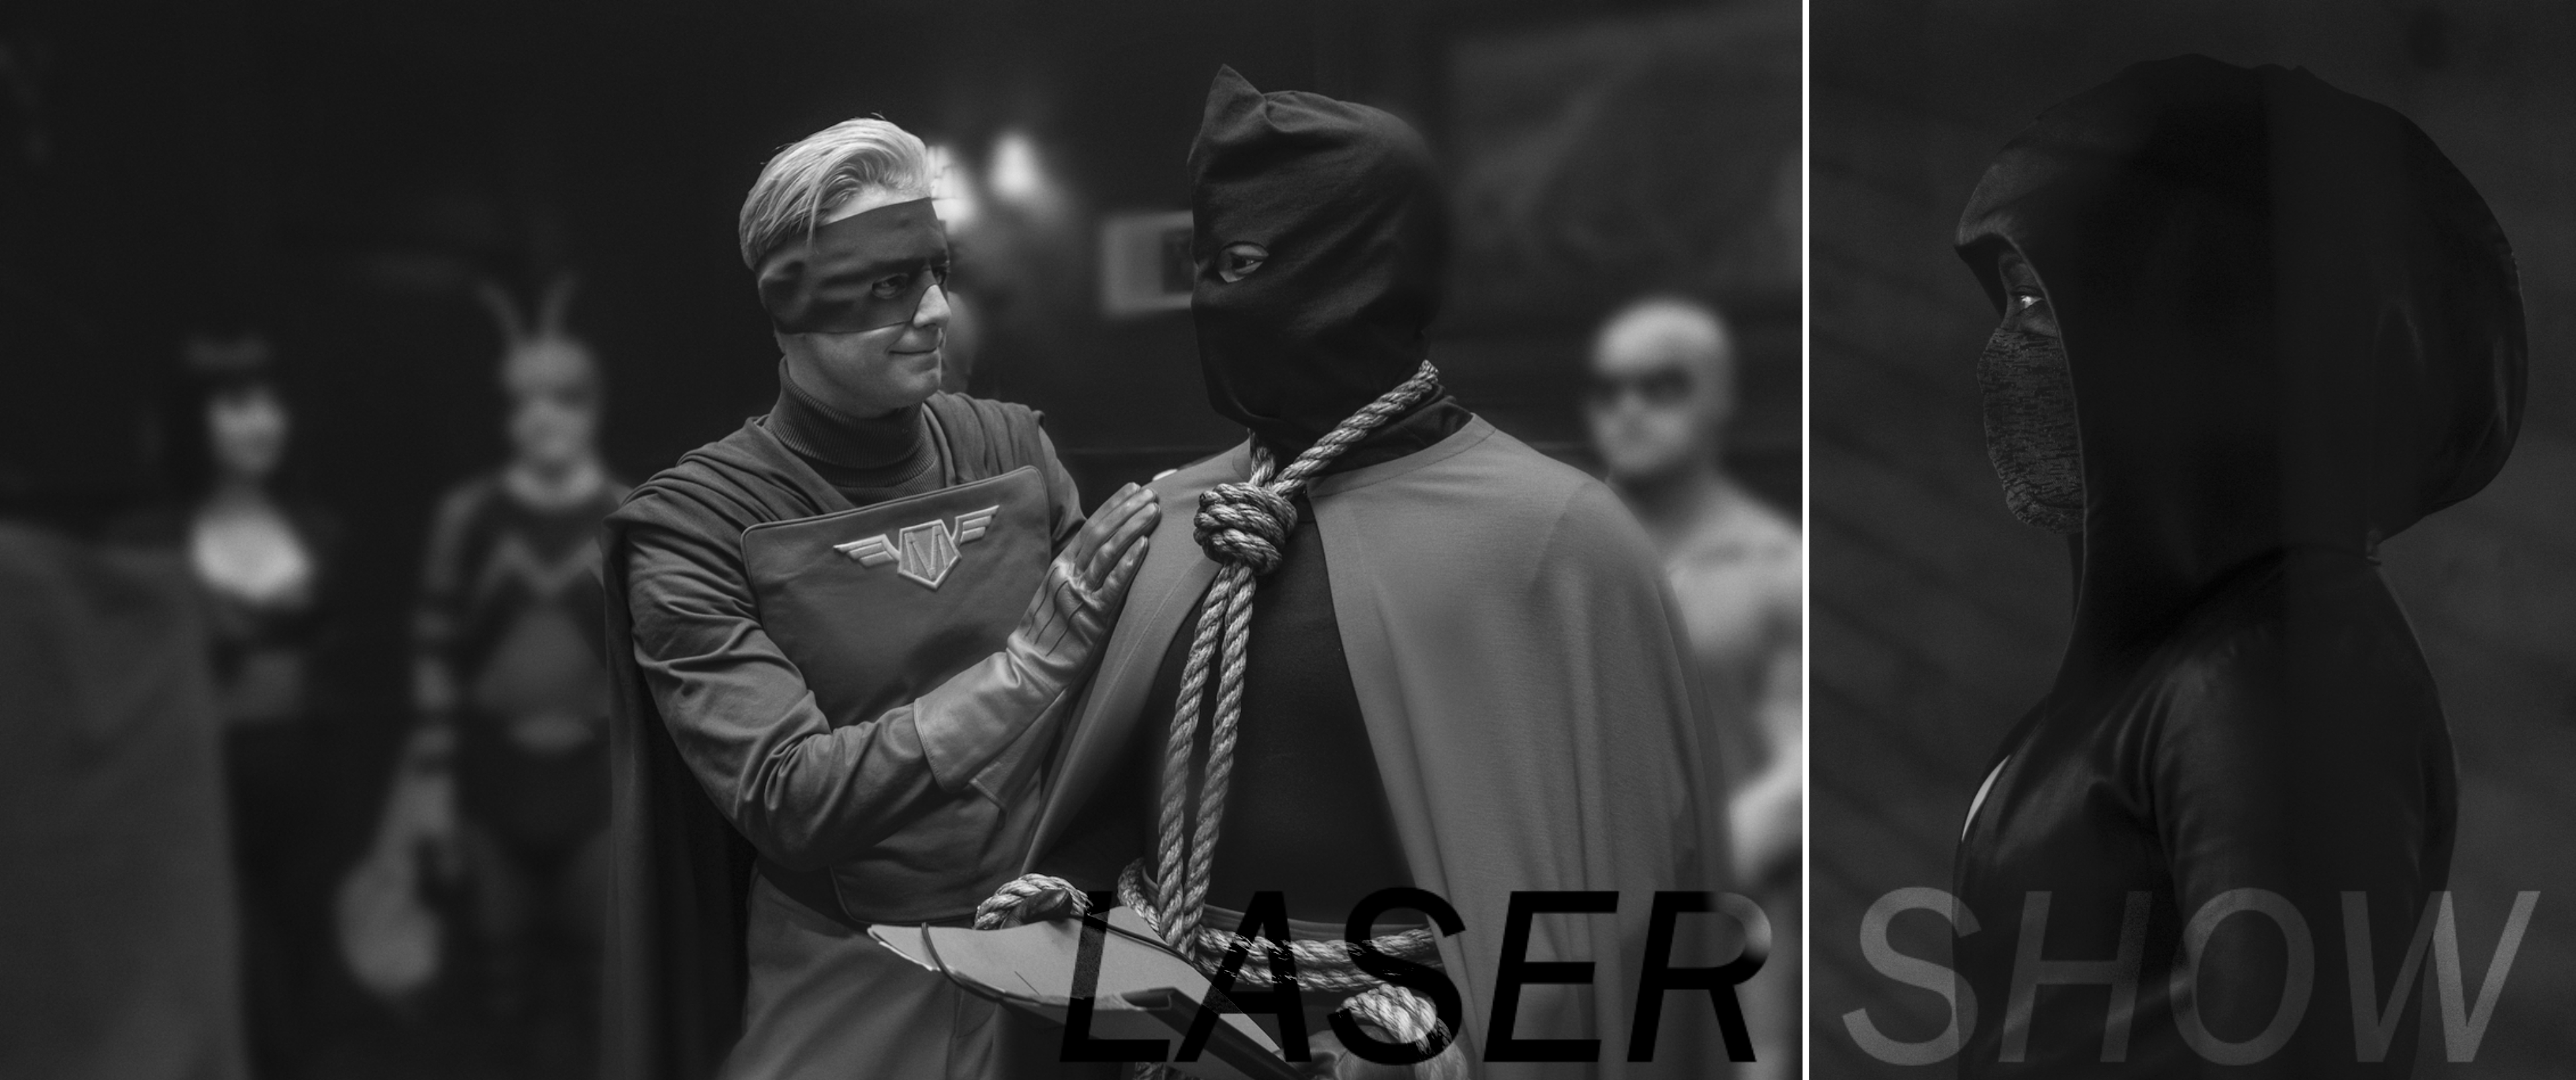 Laser Show 037: Watchmen